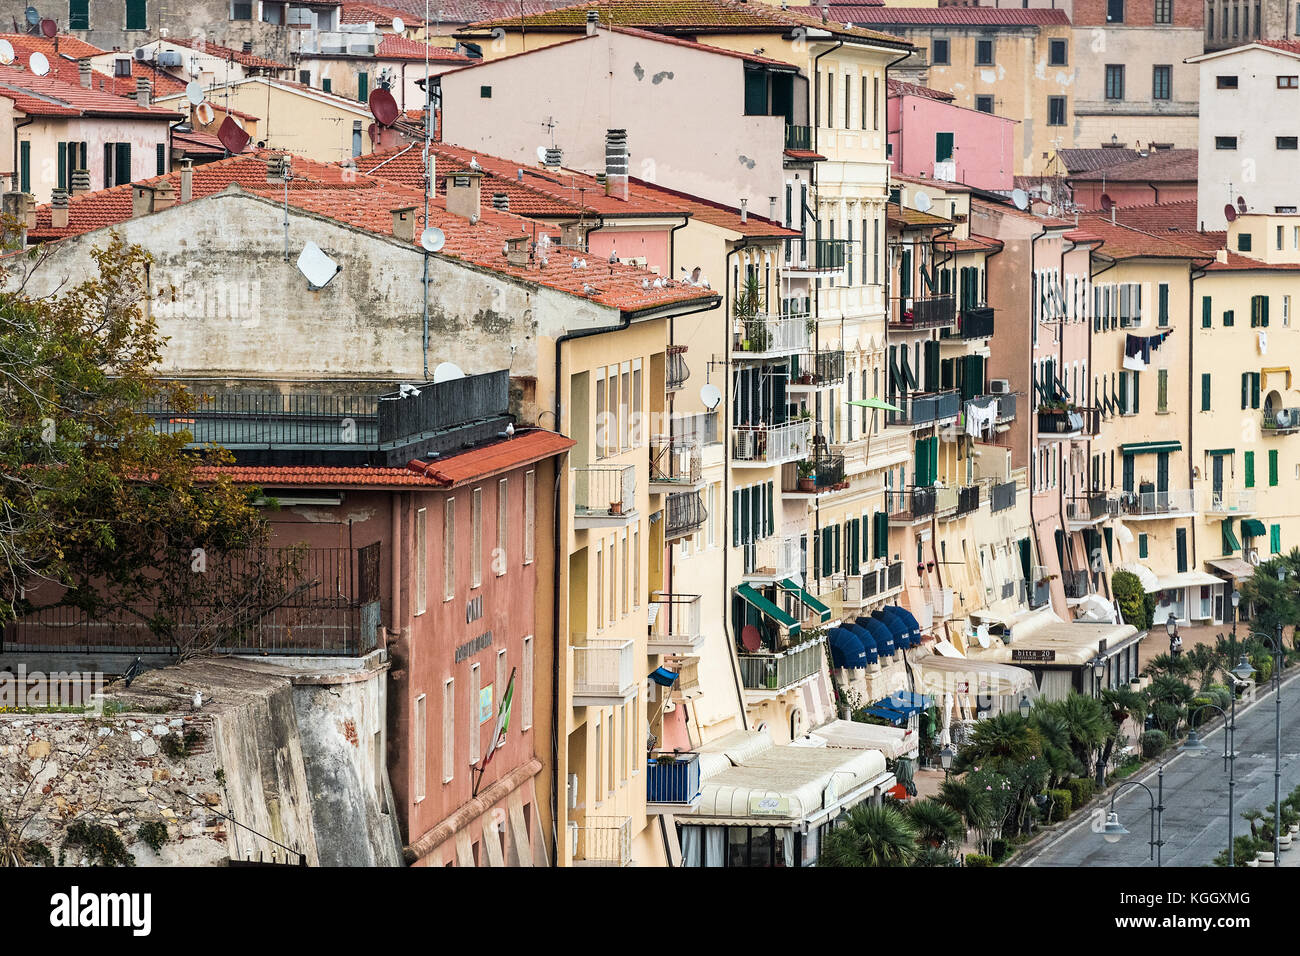 Die malerische Altstadt von Portoferraio, Elba, Italien. Stockfoto